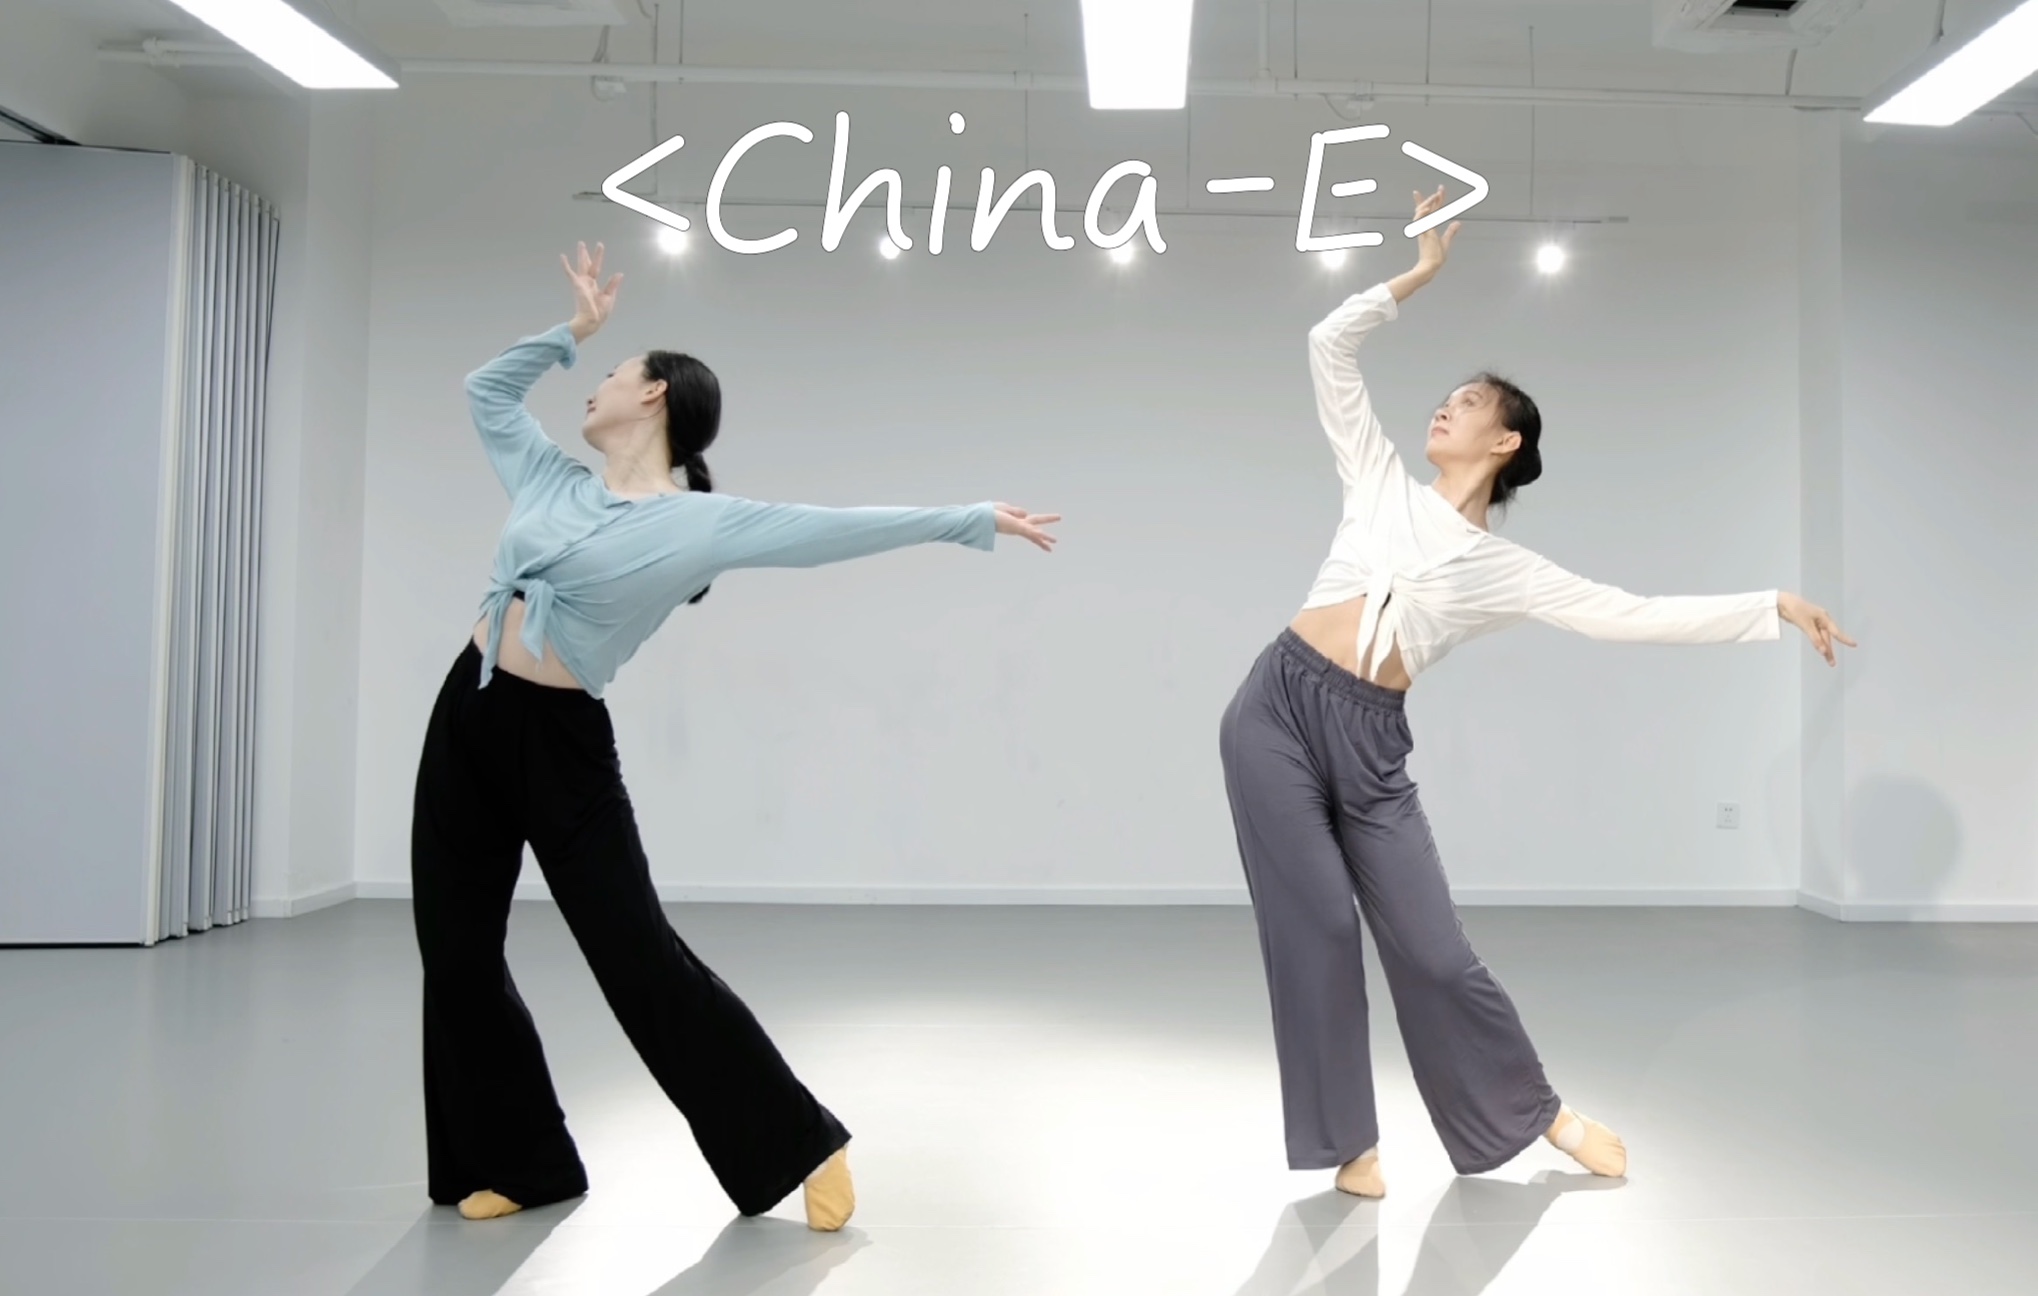 [图]适合过年跳的《China-E》小舞段